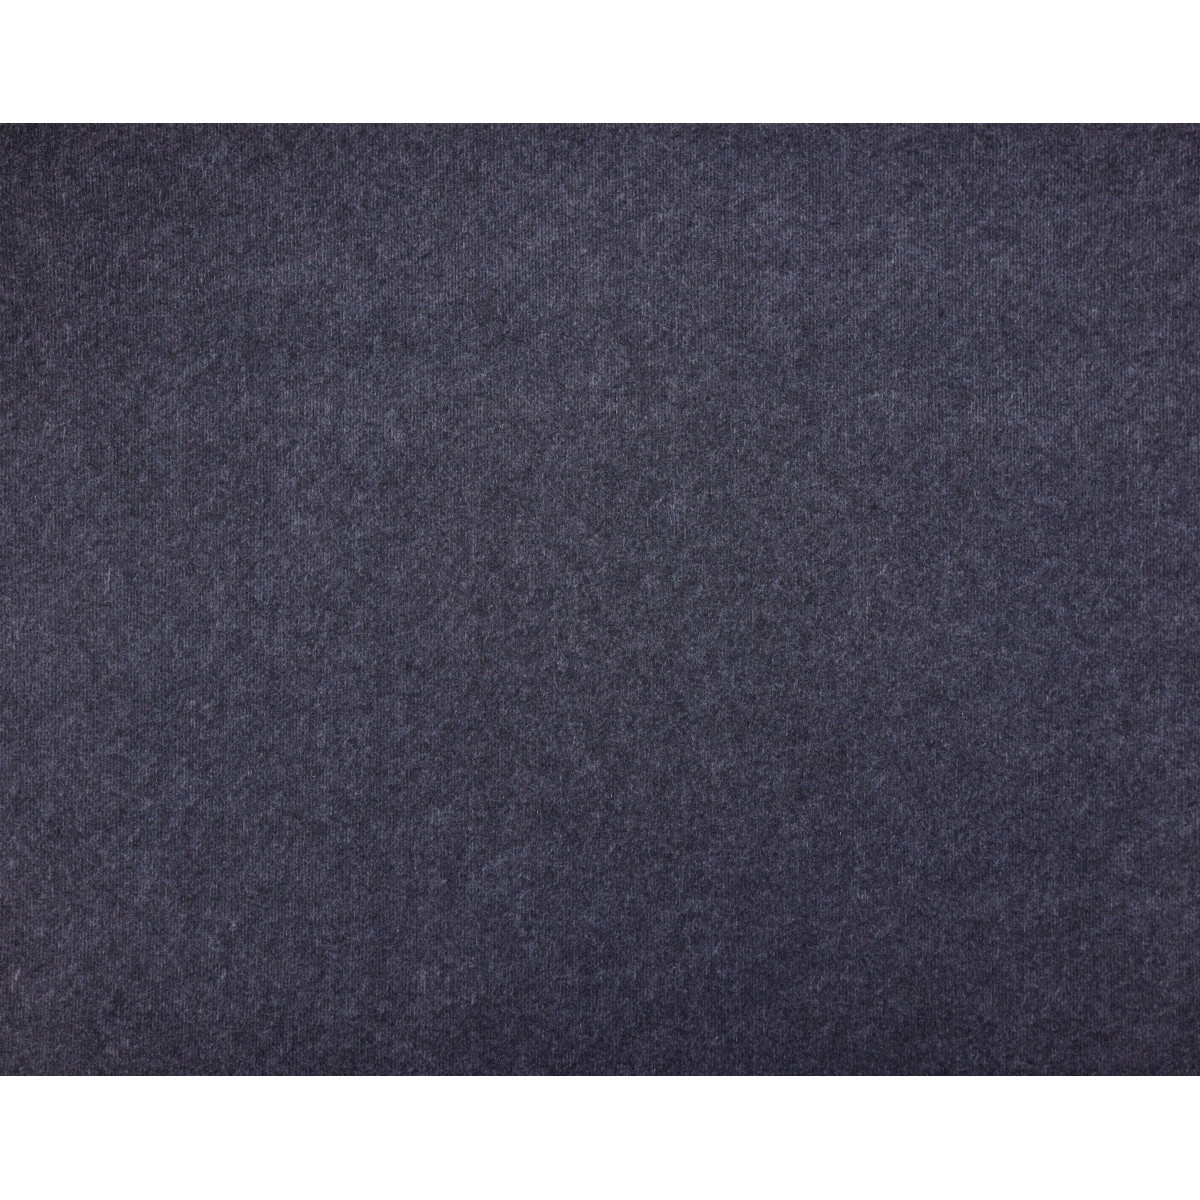 AKCE: 200x460 cm SUPER CENA: Černý univerzální koberec metrážní Budget